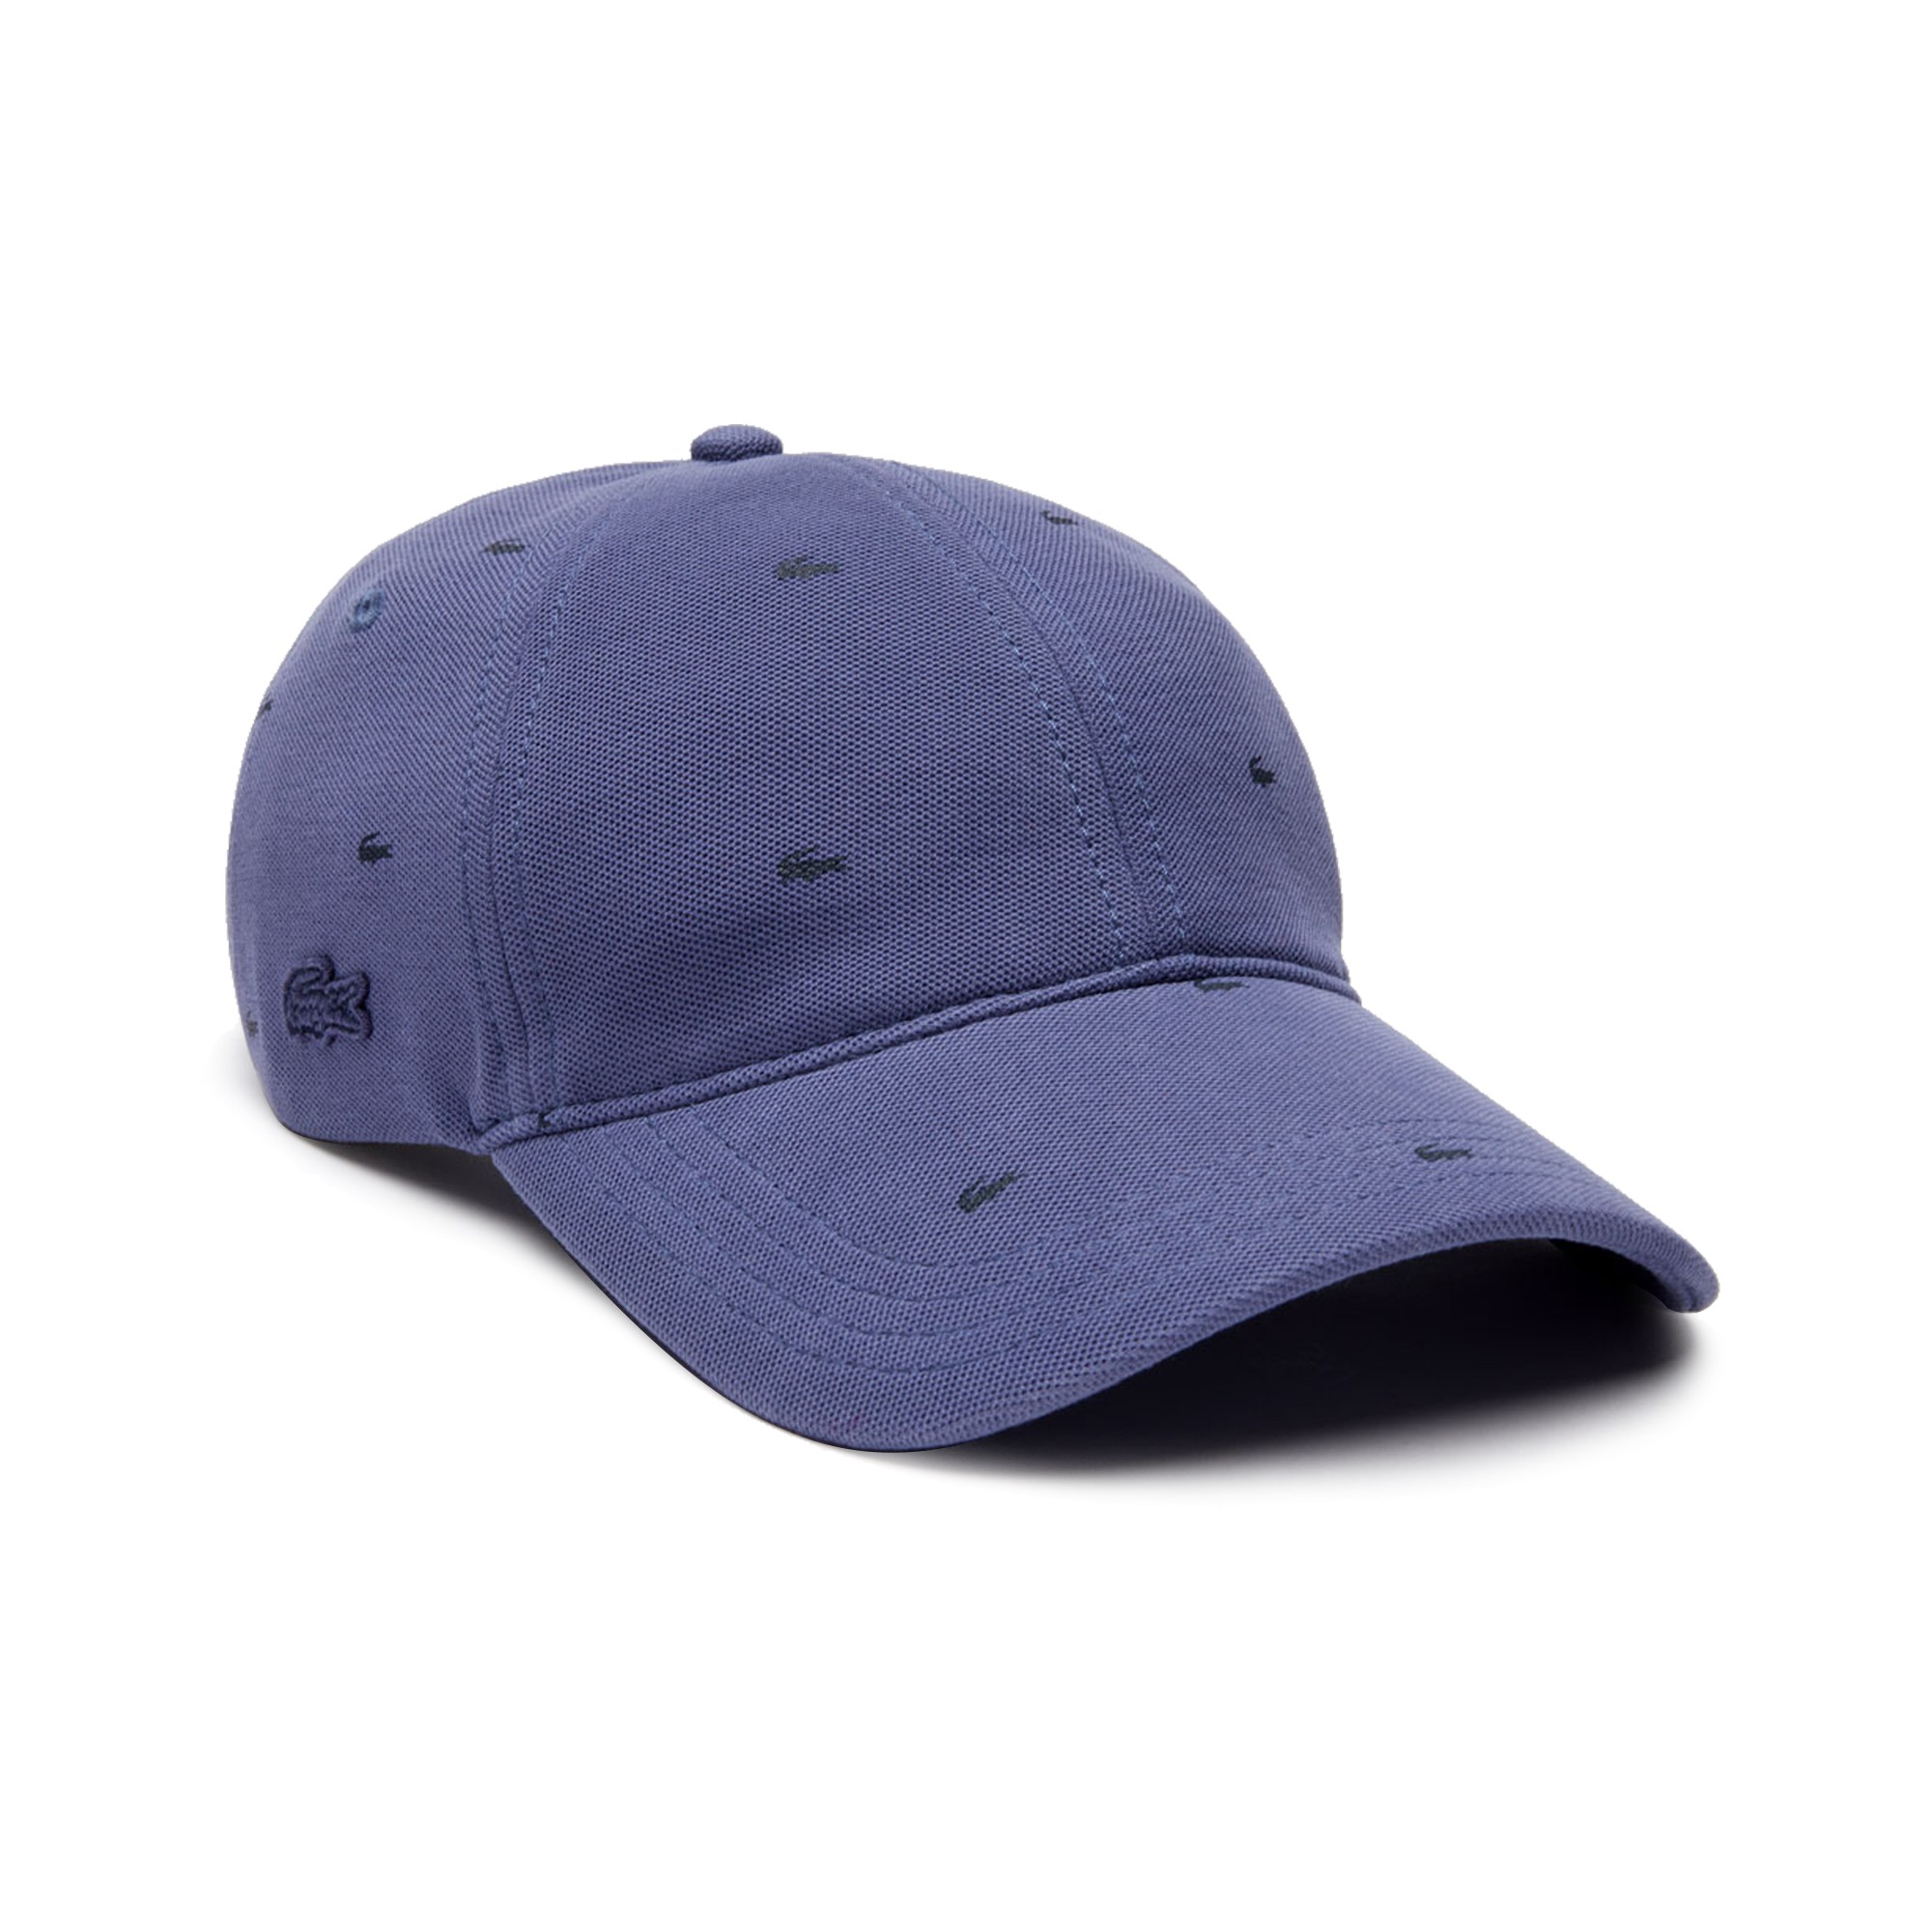 purple lacoste hat